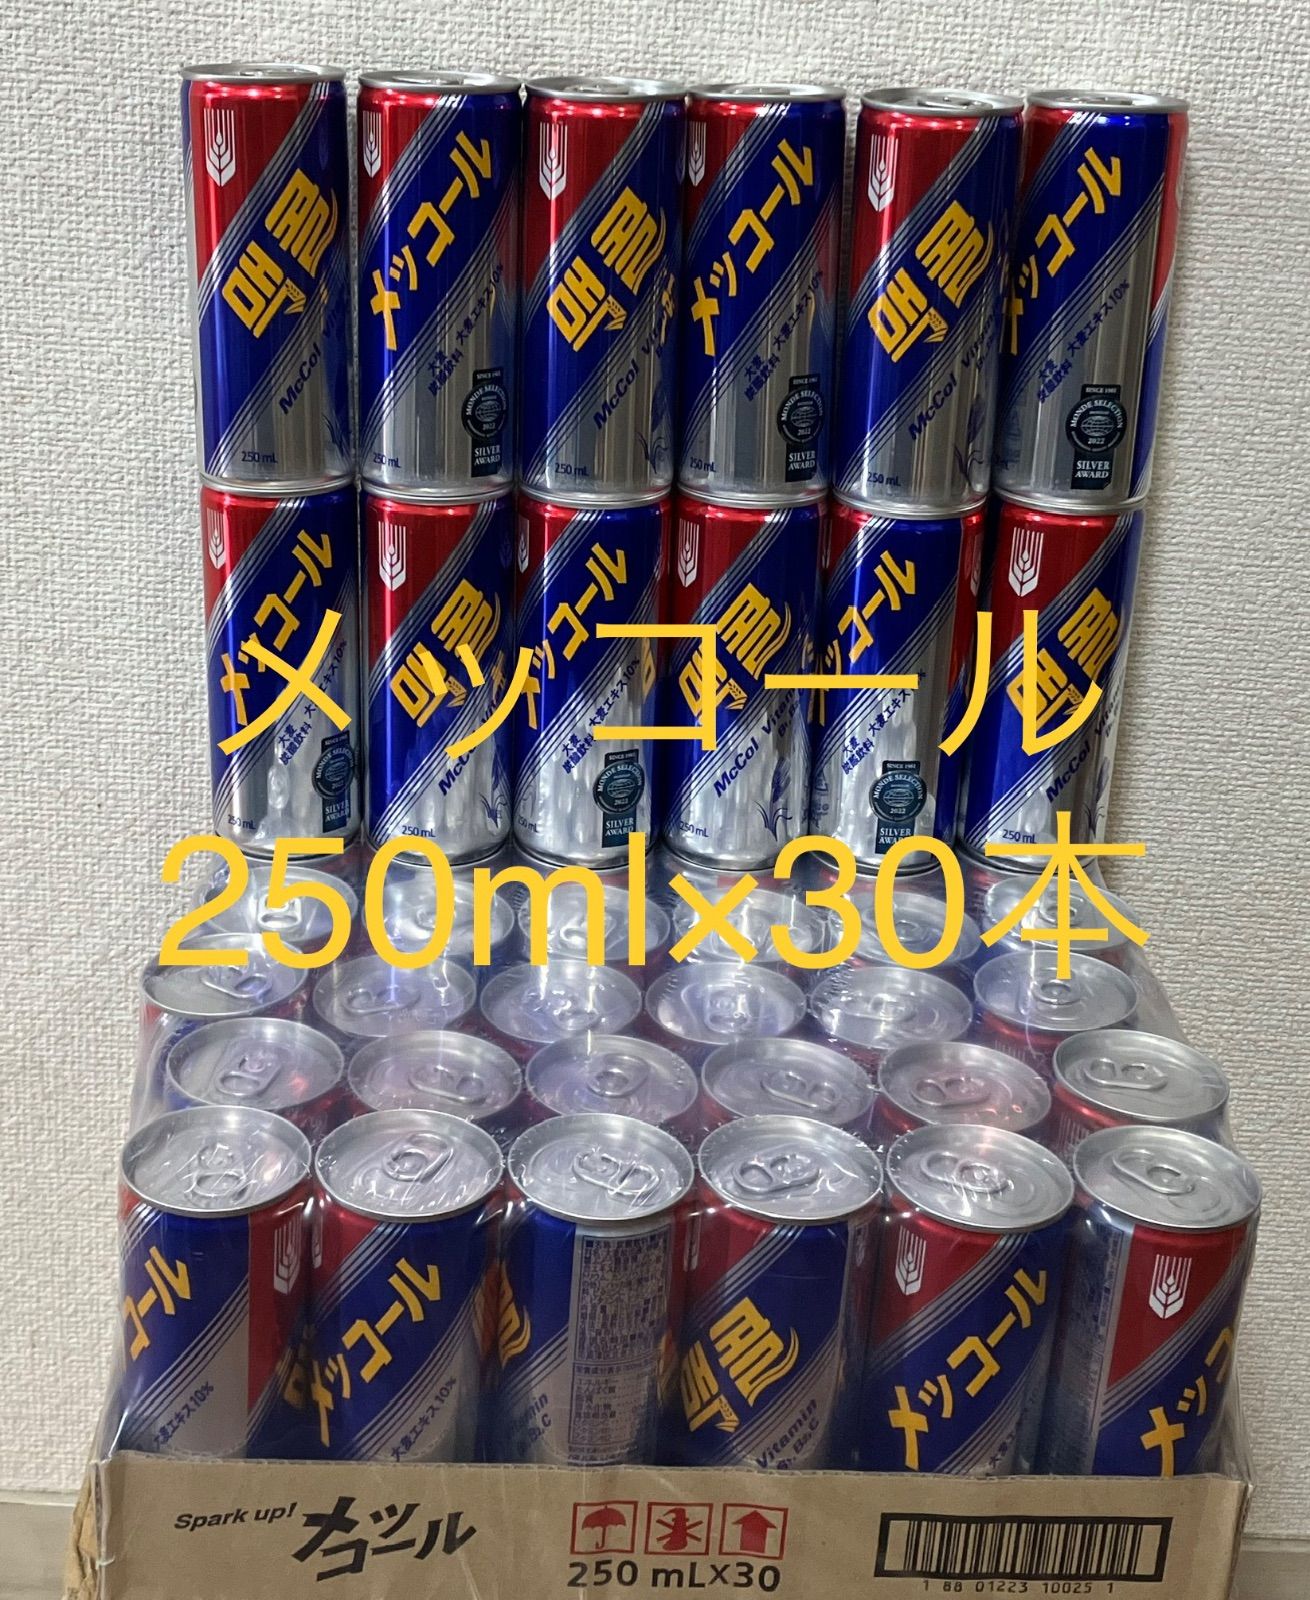 メッコール 麦コーラ韓国の人気飲料水250ml×60本